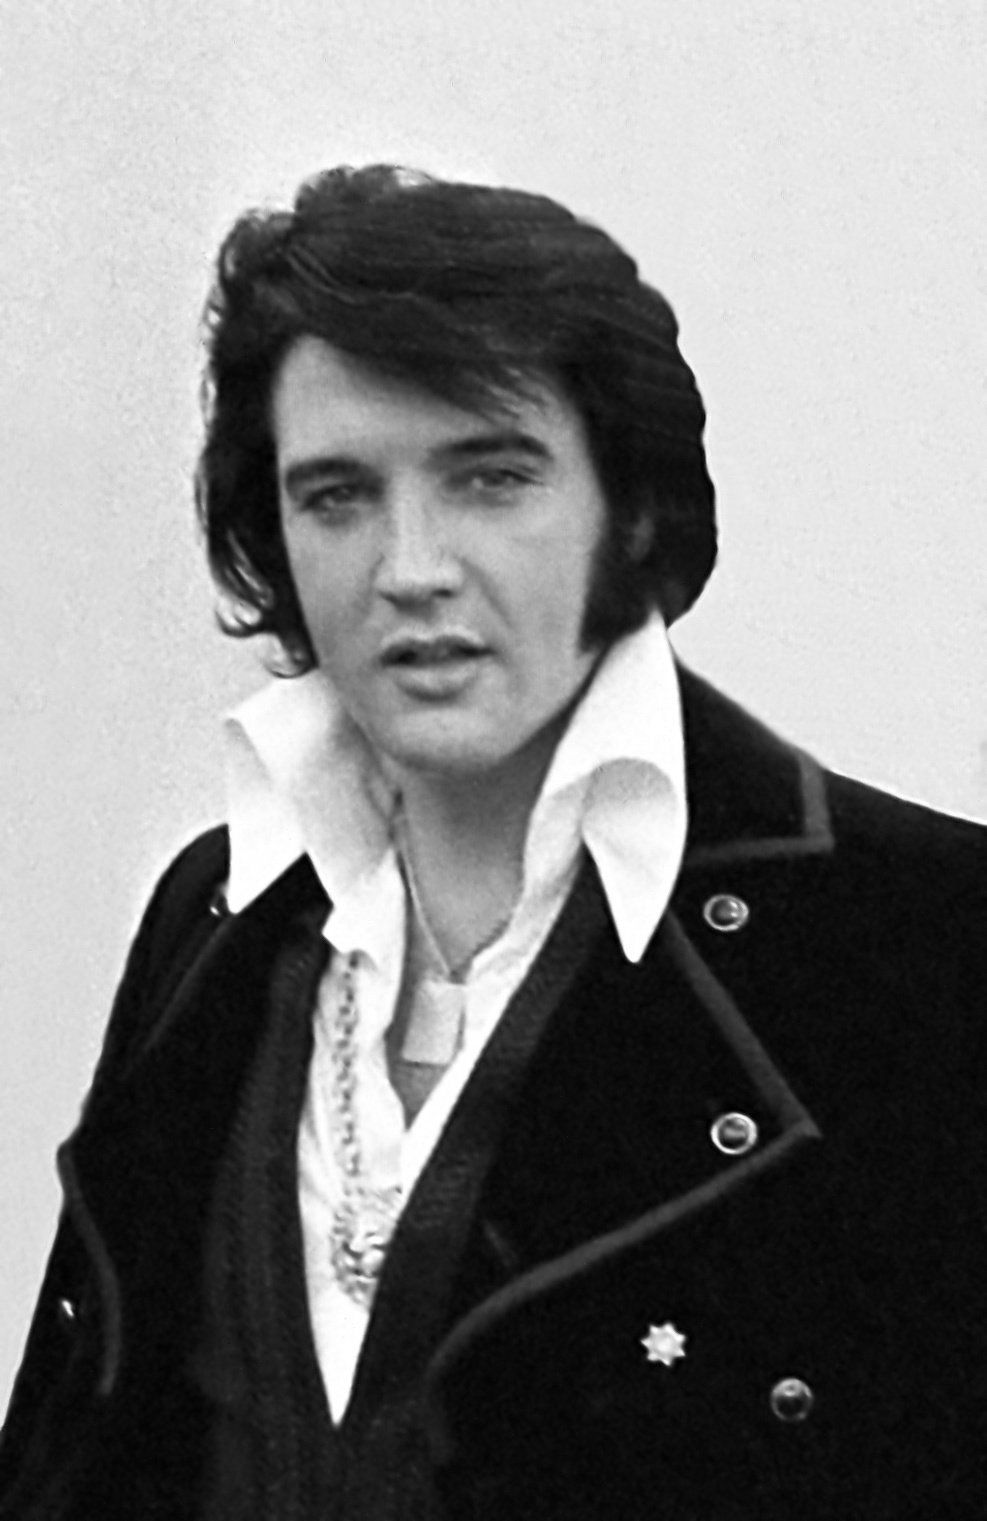 Wideo zespołu Elvis Singing „Always on My Mind” w połączeniu z rzadkim materiałem rodzinnym Presleya